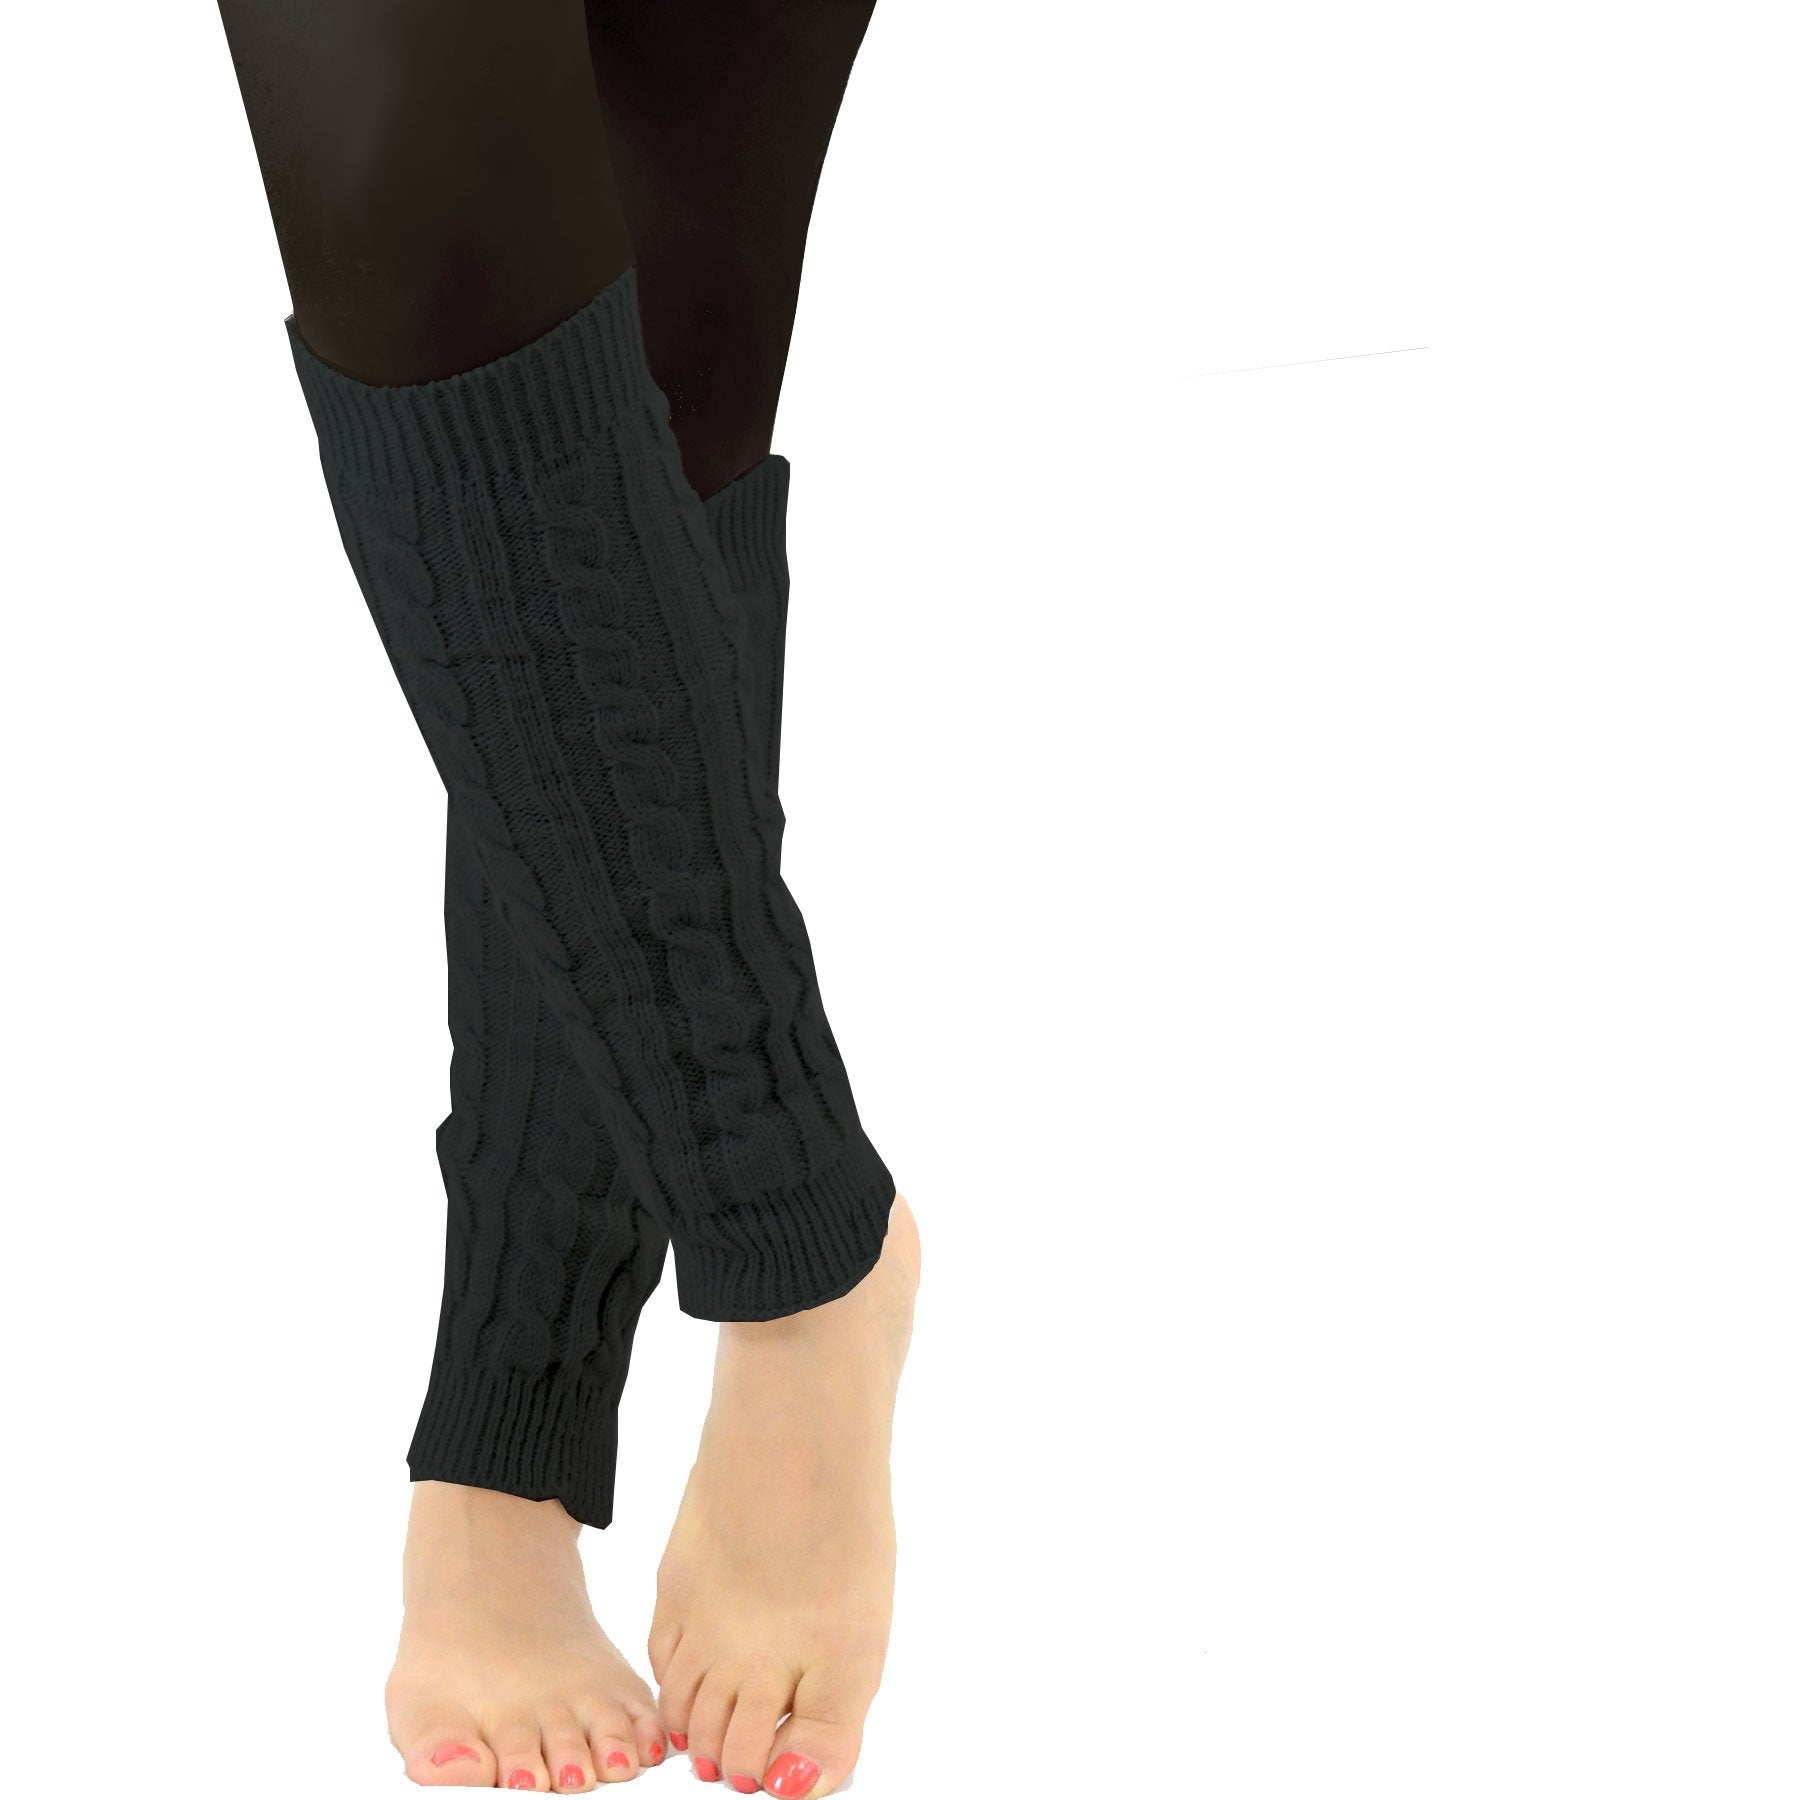 TeeHee Socks Women's Acrylic Leg Warmer Assorted A 4-Pack (Z105)